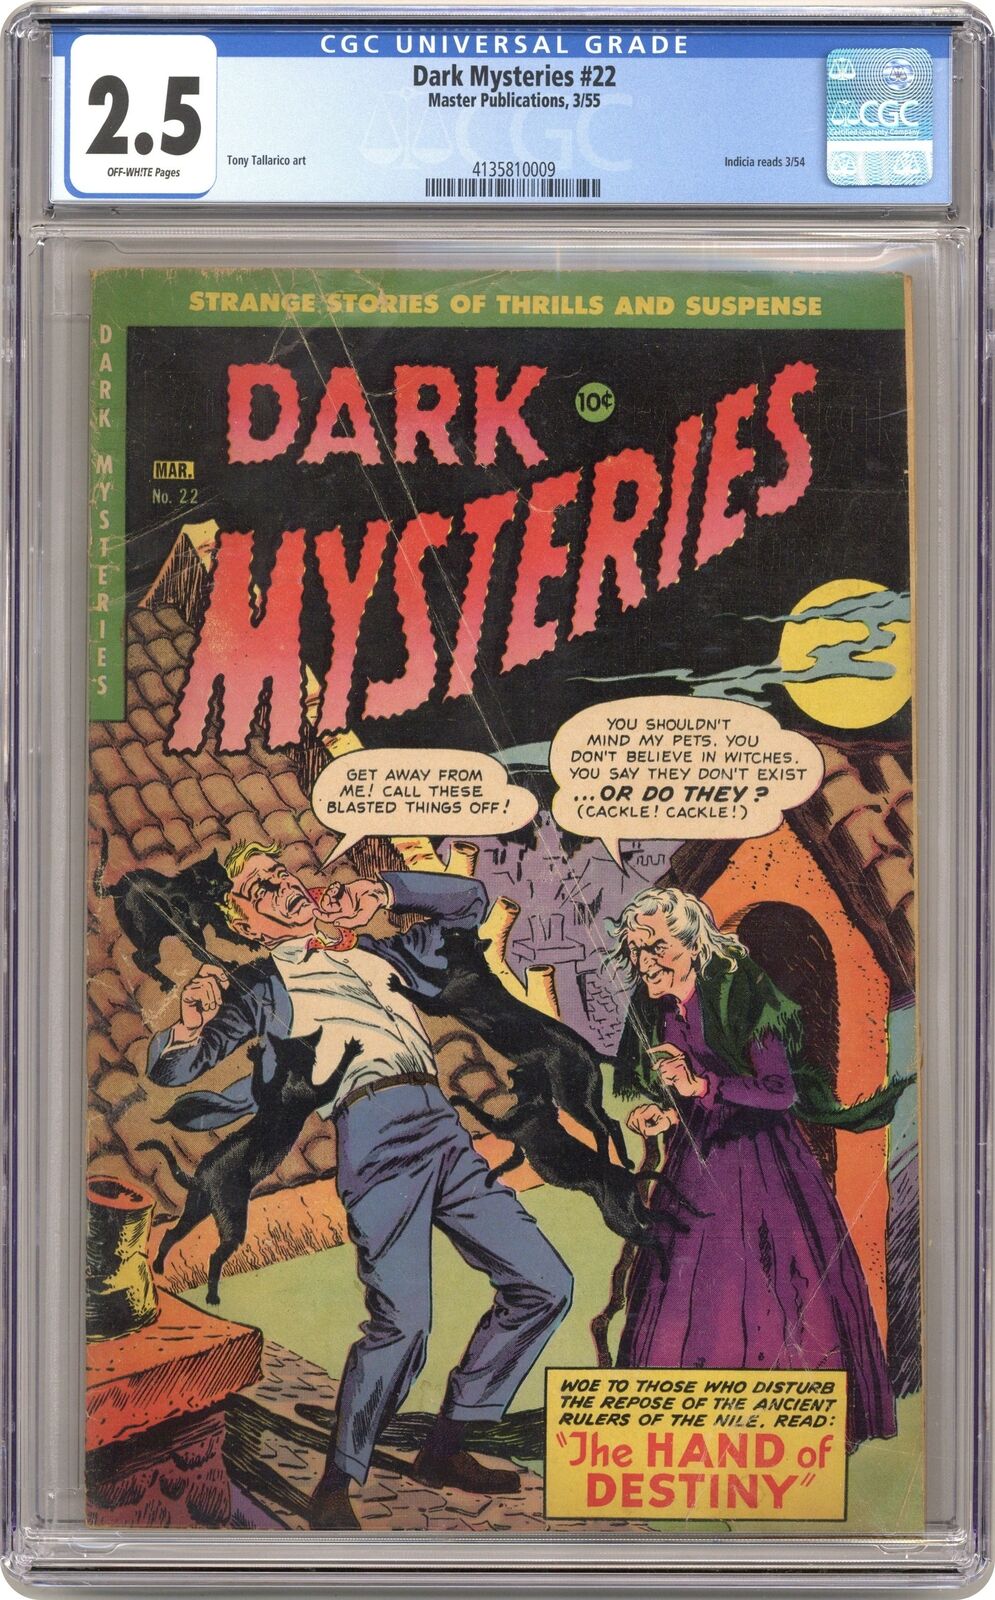 Dark Mysteries #22 CGC 2.5 1955 4135810009